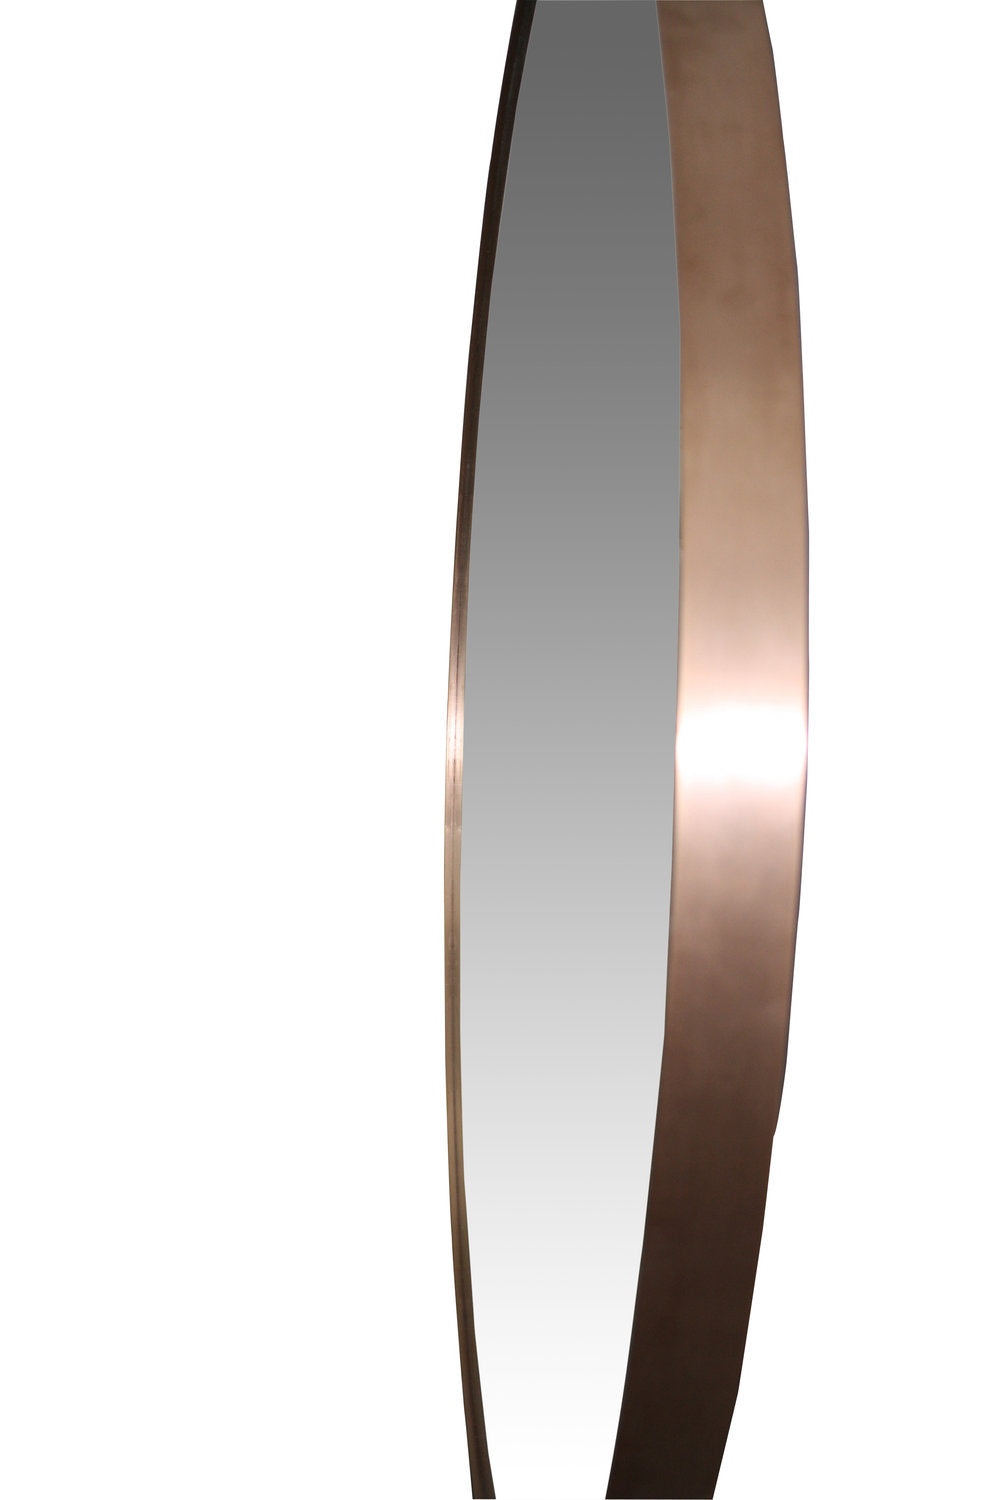 Round  copper mirror